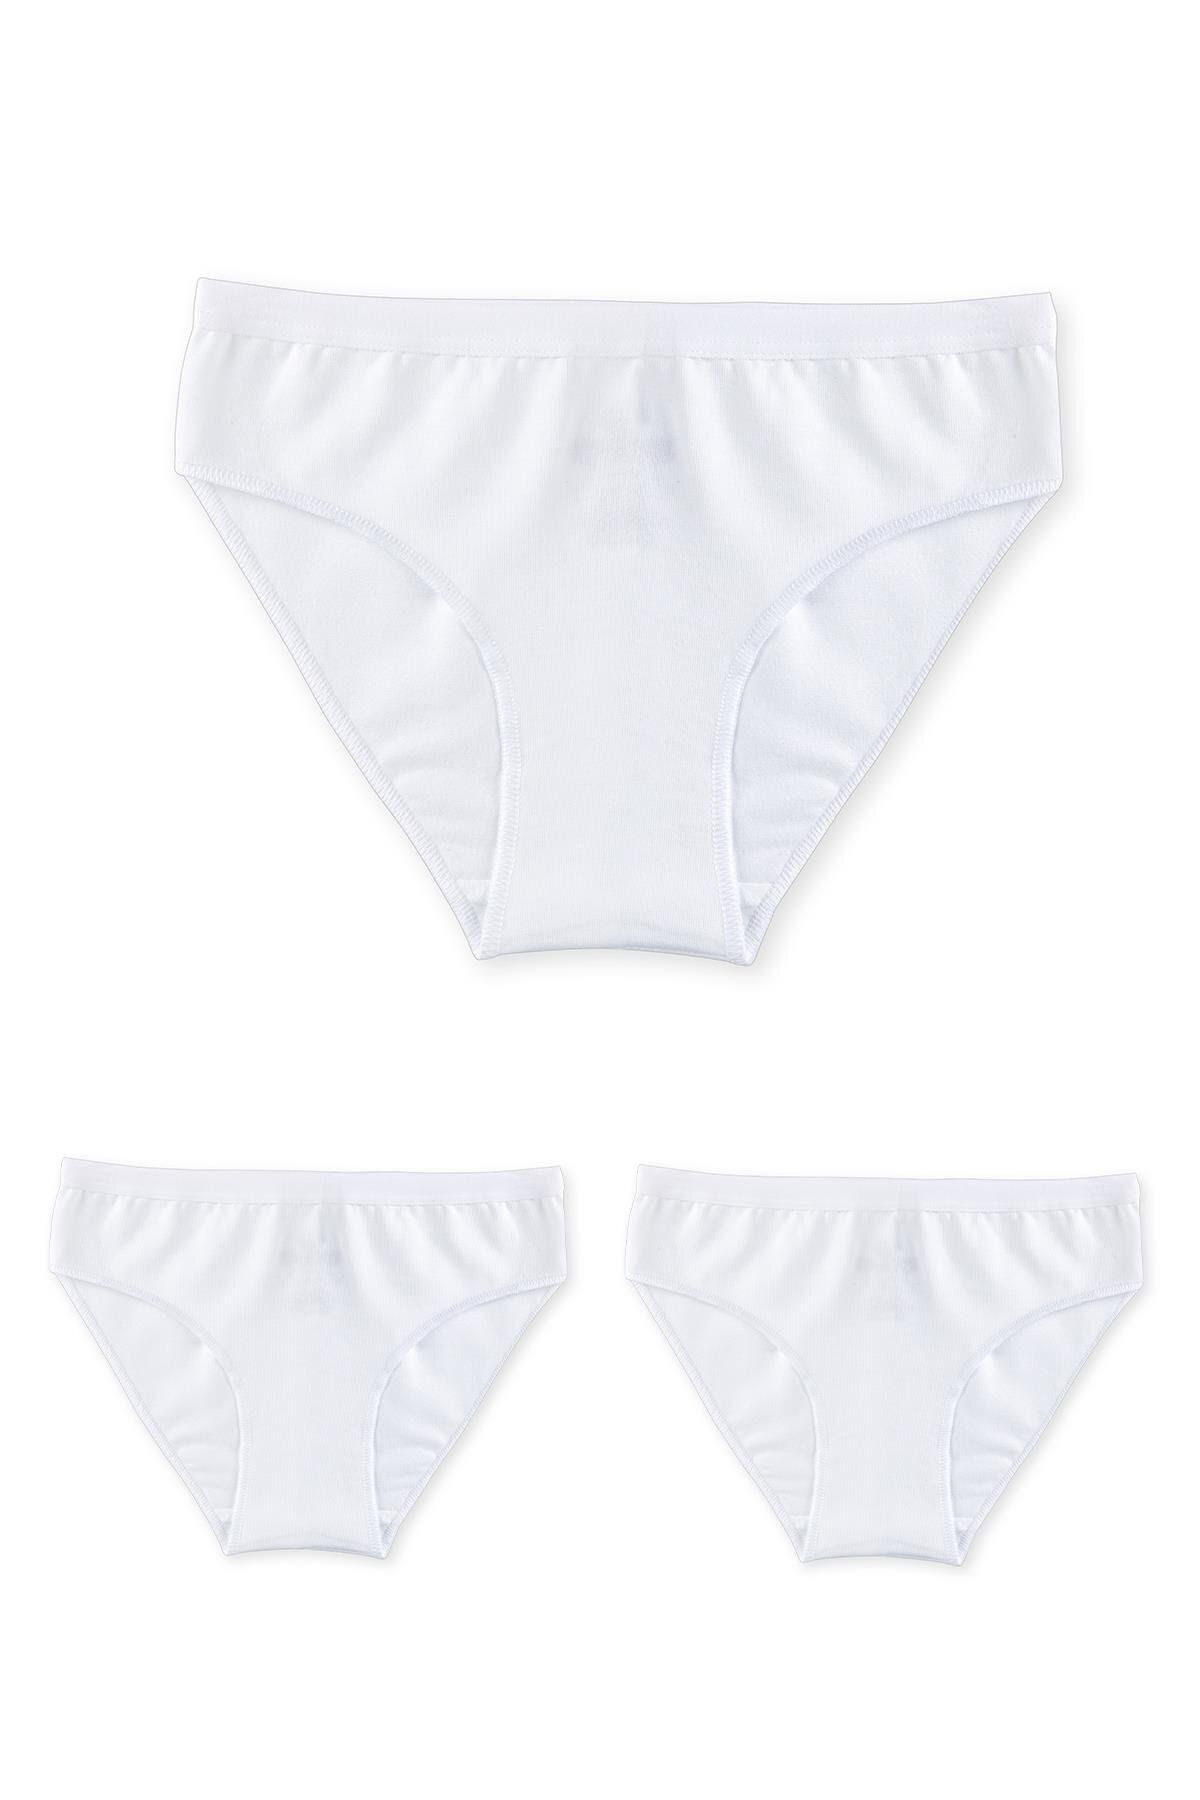 BAYKAR Kız Çocuk Pamuklu Bikini Kesim Düz Basic Külot 3'lü Paket 5005 Beyaz 5005-3